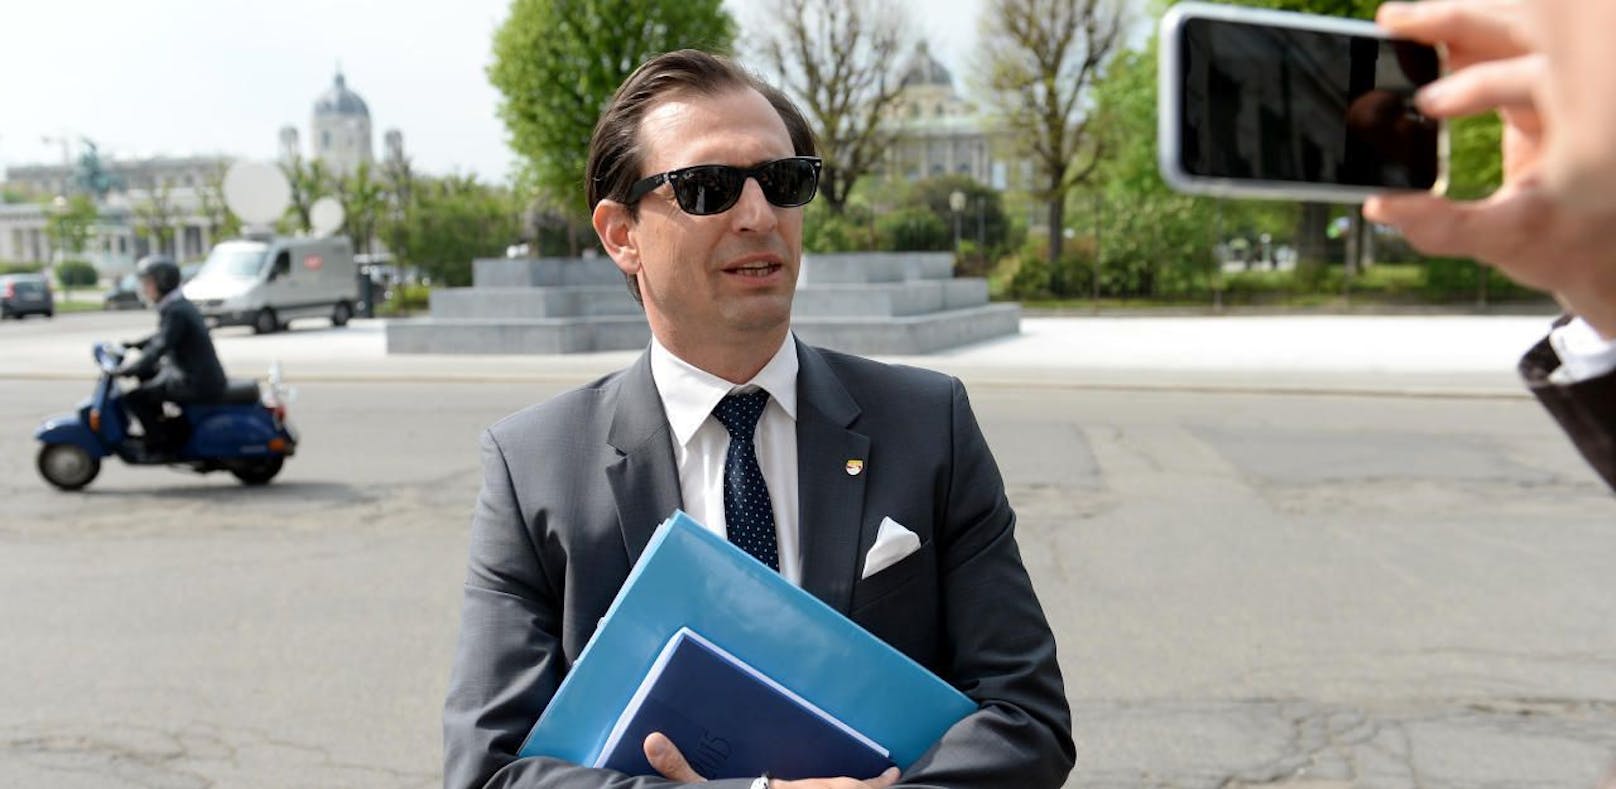 Der FPÖ-Abgeordnete Christian Ragger wurde vom Nationalrat ausgeliefert, weil er zu schnell gefahren ist.